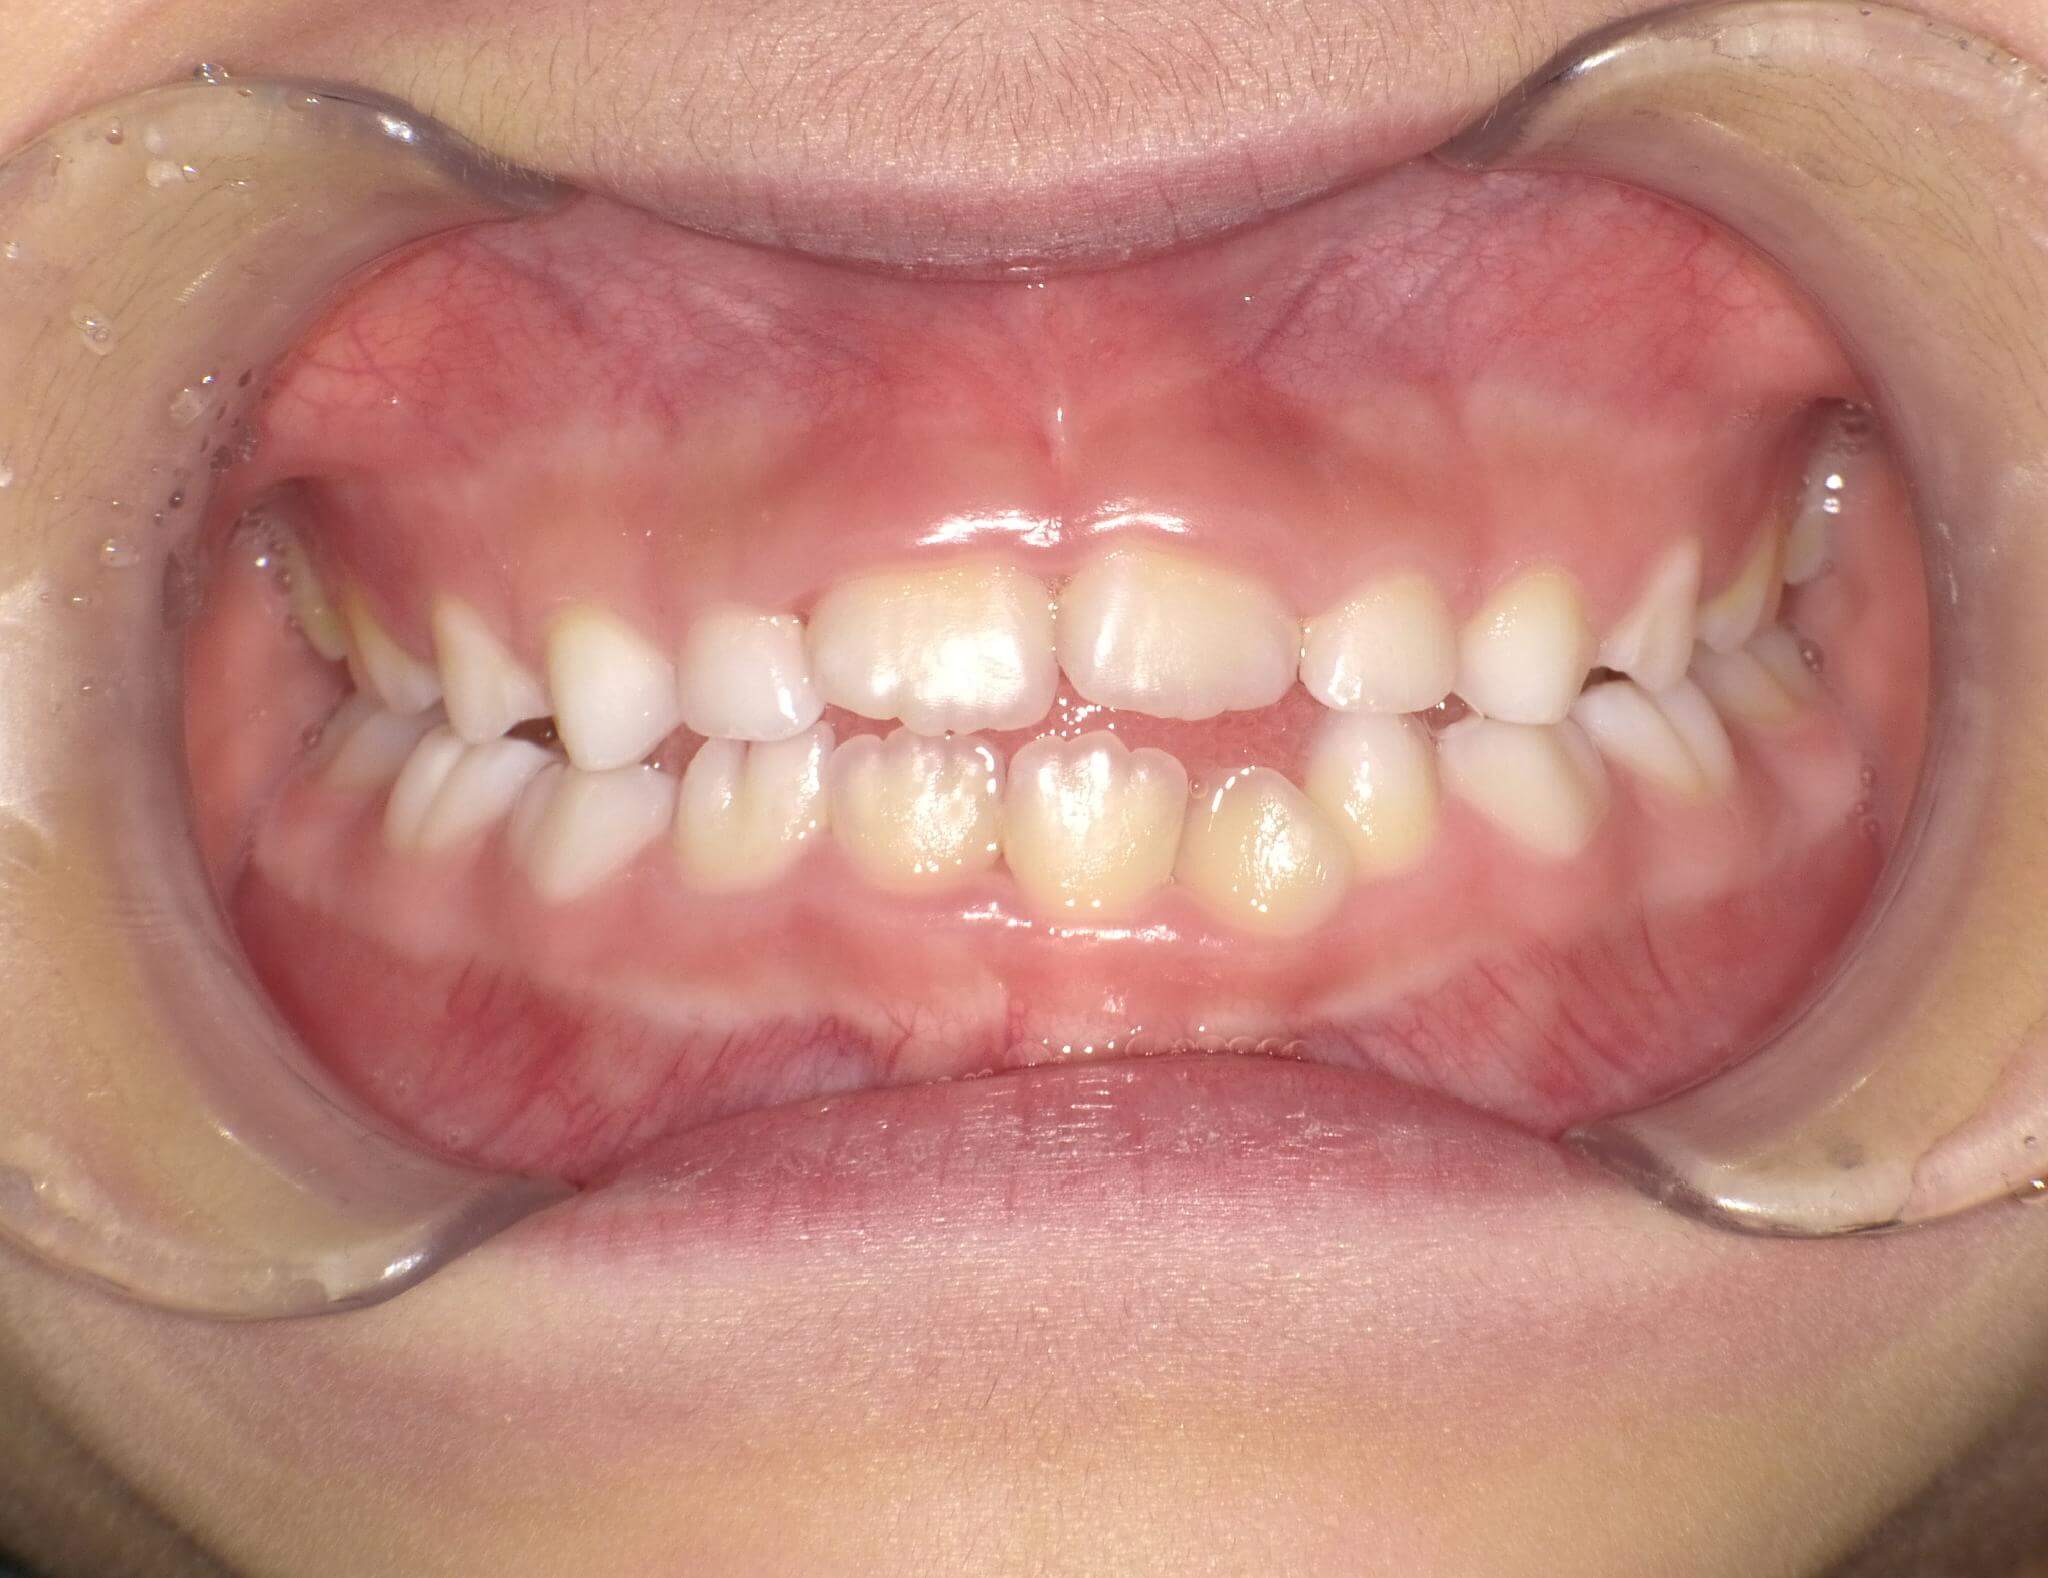 治療してから6か月です。1歯足りない分正中のズレがある。歯と歯の間から舌突出が見られる。